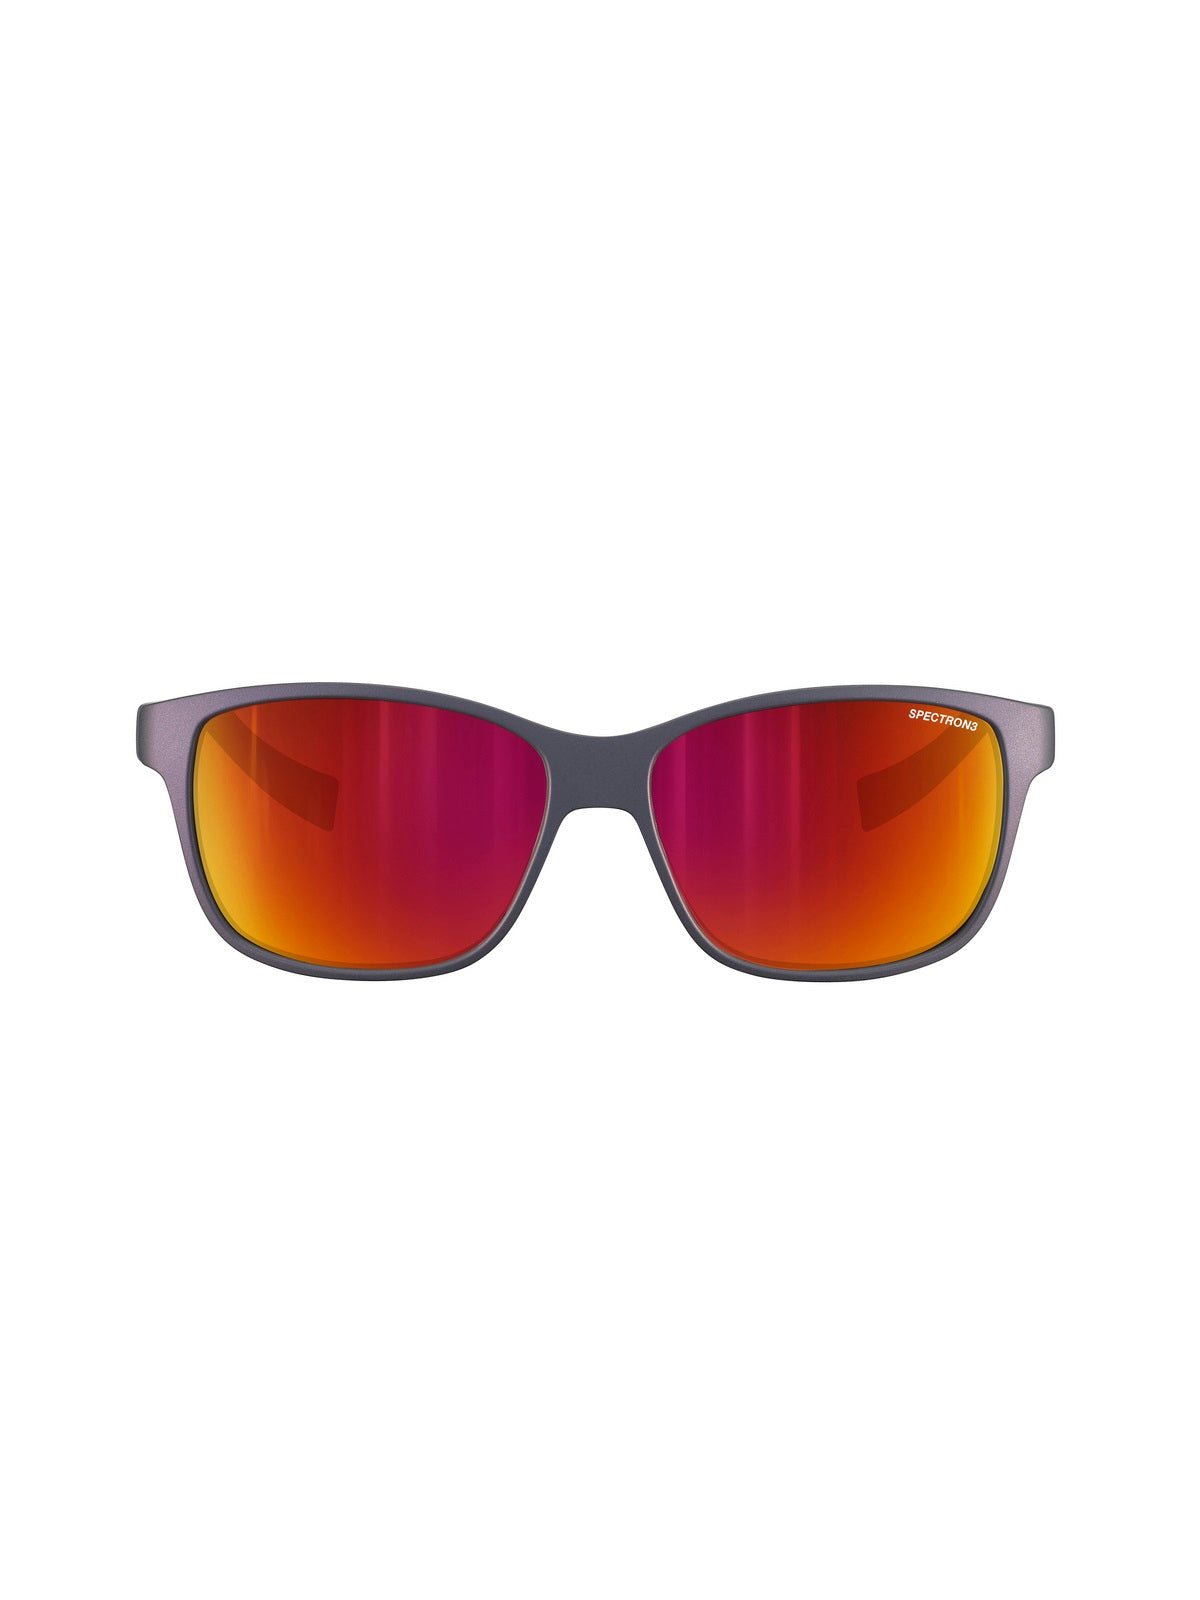 Okulary przeciwsłoneczne Julbo Powell - niebieski-czerwony opalowy| Spectron cat 3 Cf